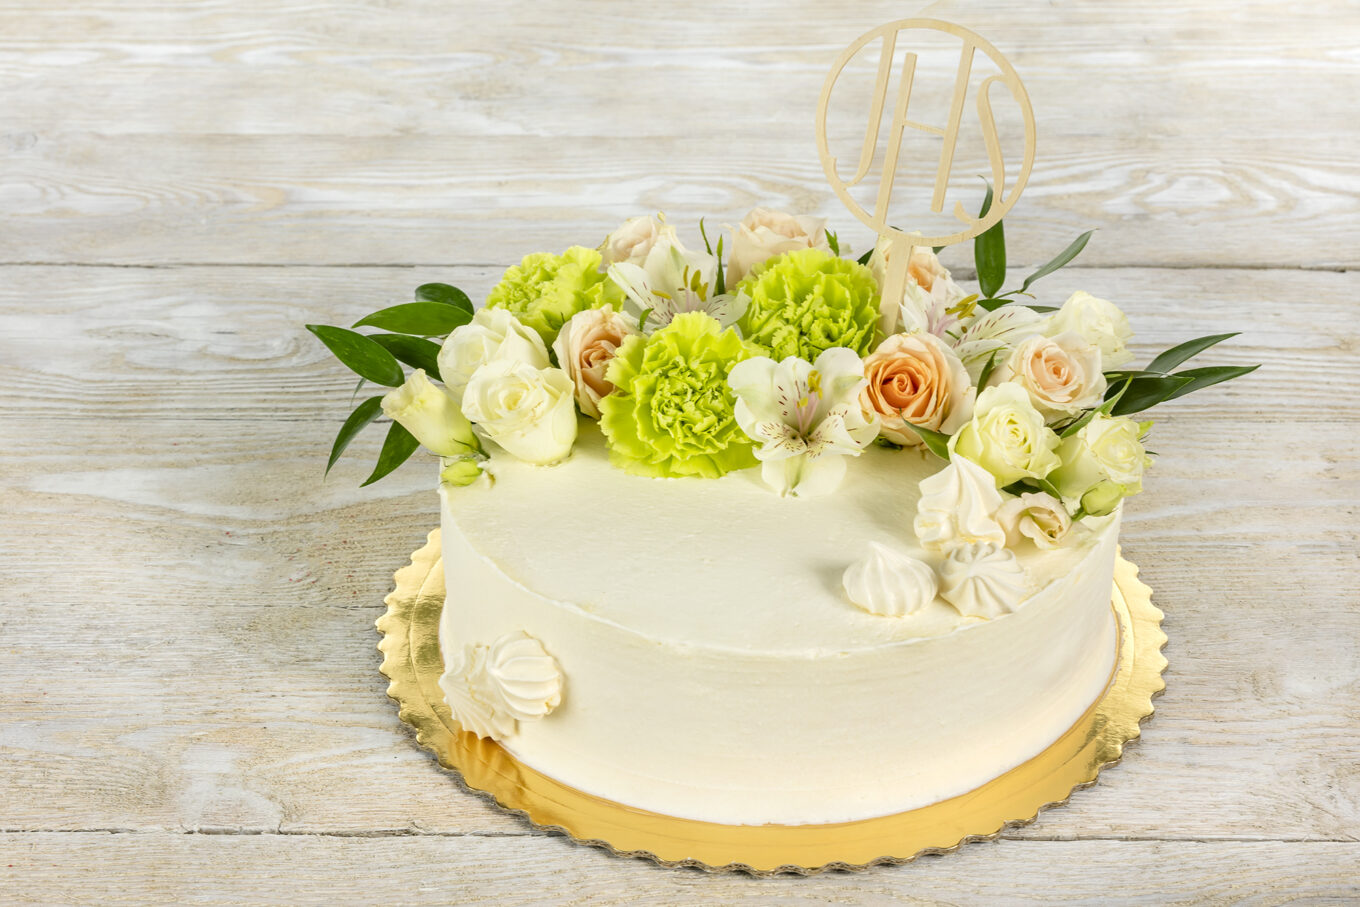 Gâteau rond avec des fleurs pour la communion La confiserie Jacek Placek est synonyme du goût des gâteaux faits maison à base de produits naturels.